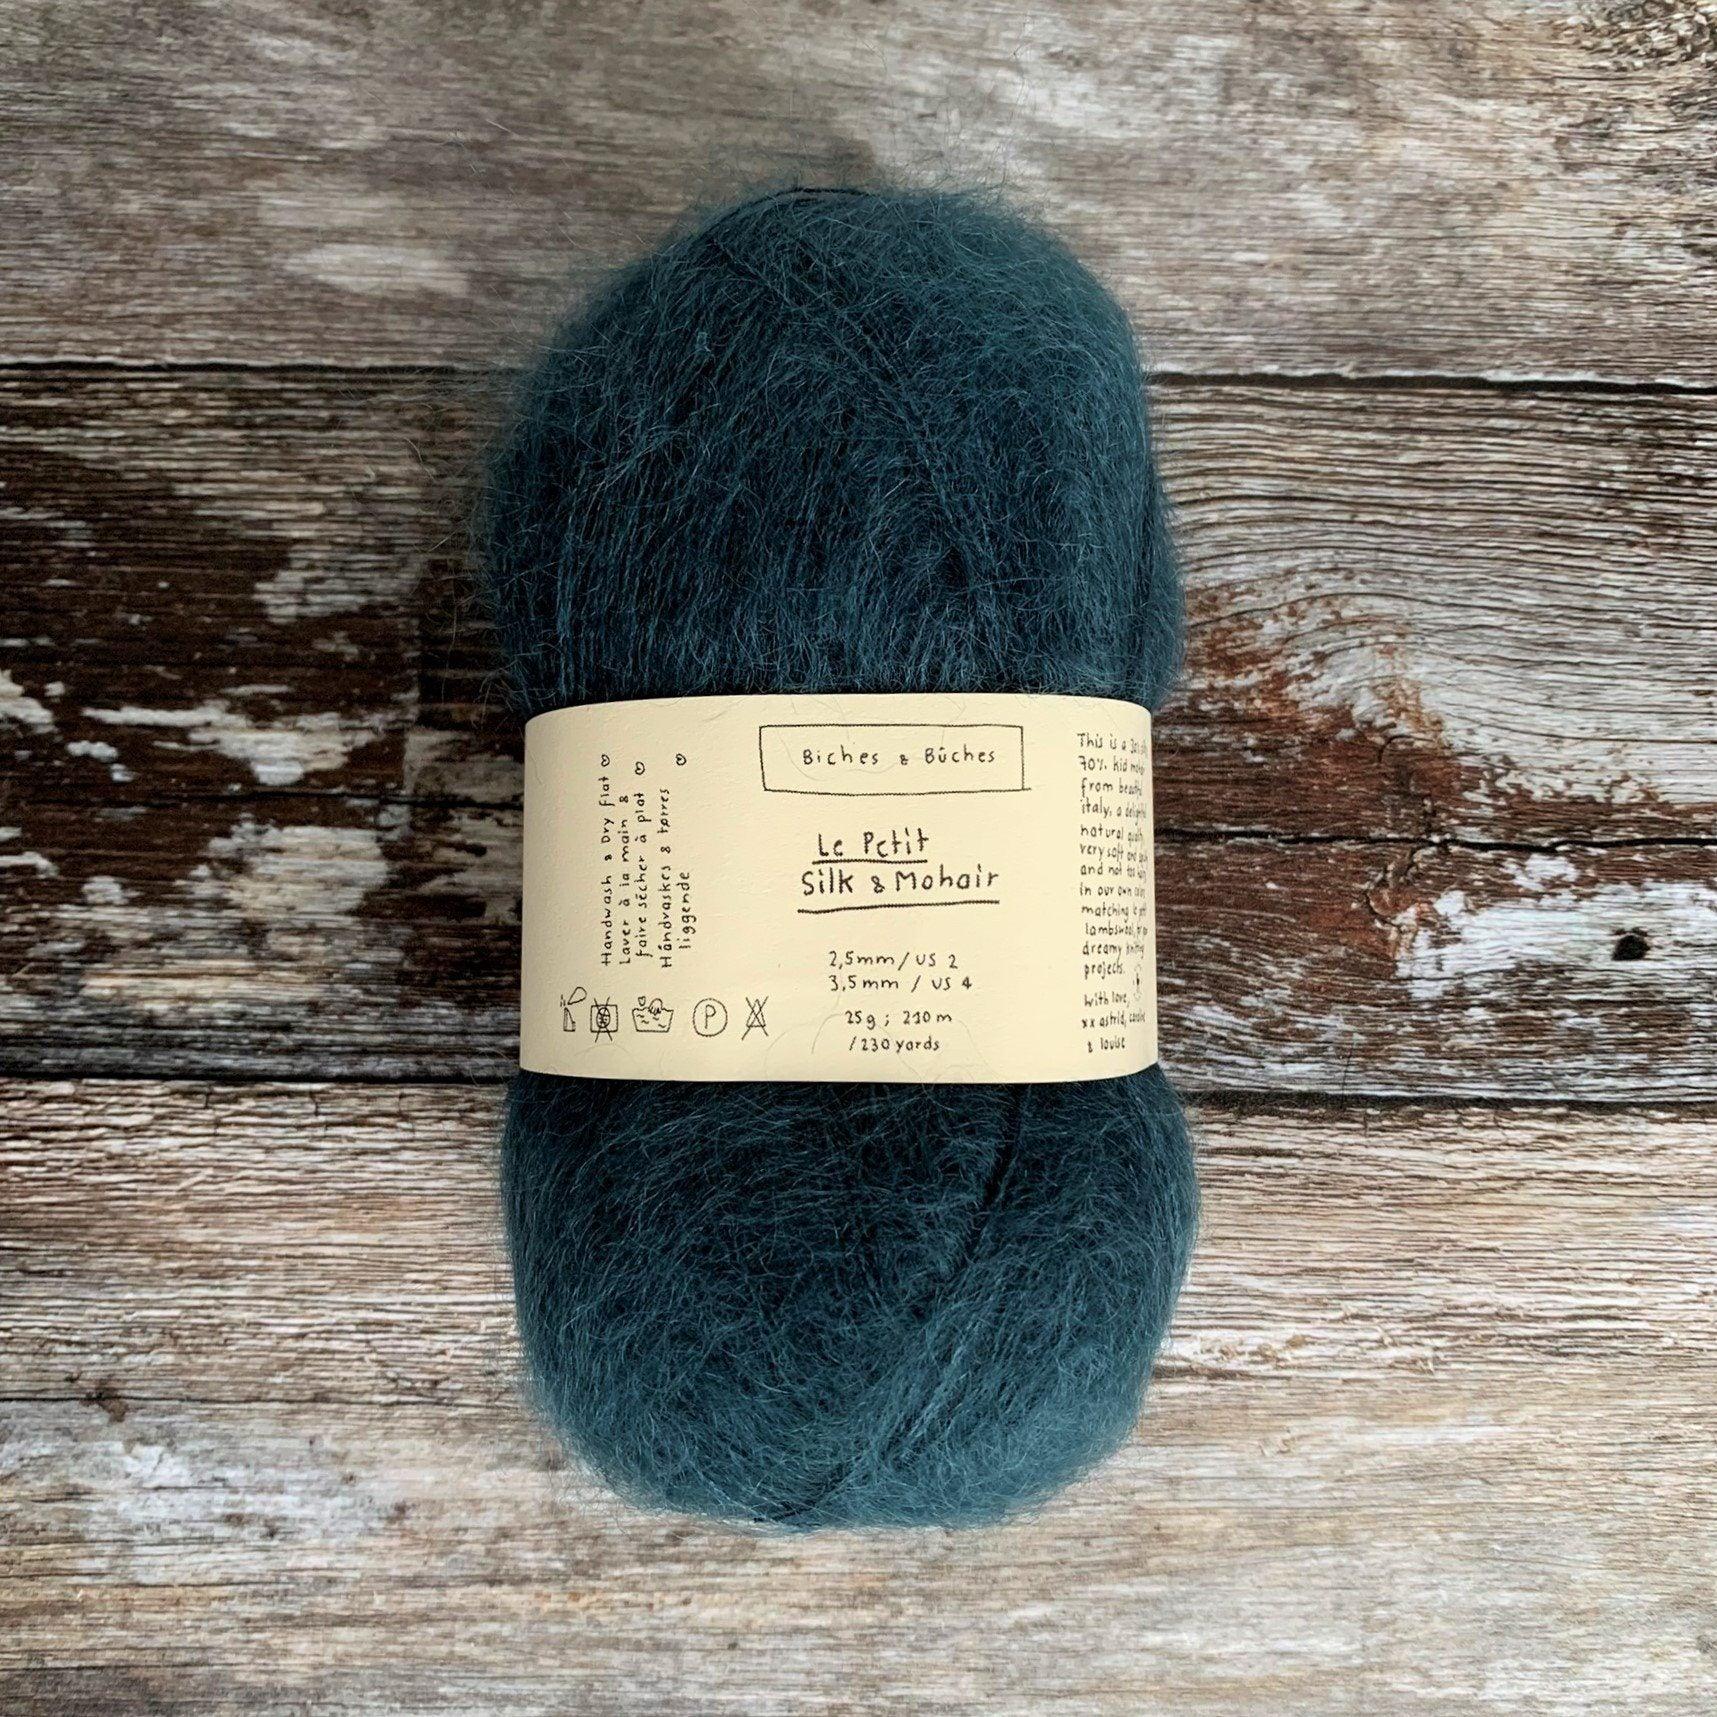 Biches & Bûches Biches & Bûches Le Petit Silk & Mohair - Dark Blue Turquoise - Lace Knitting Yarn